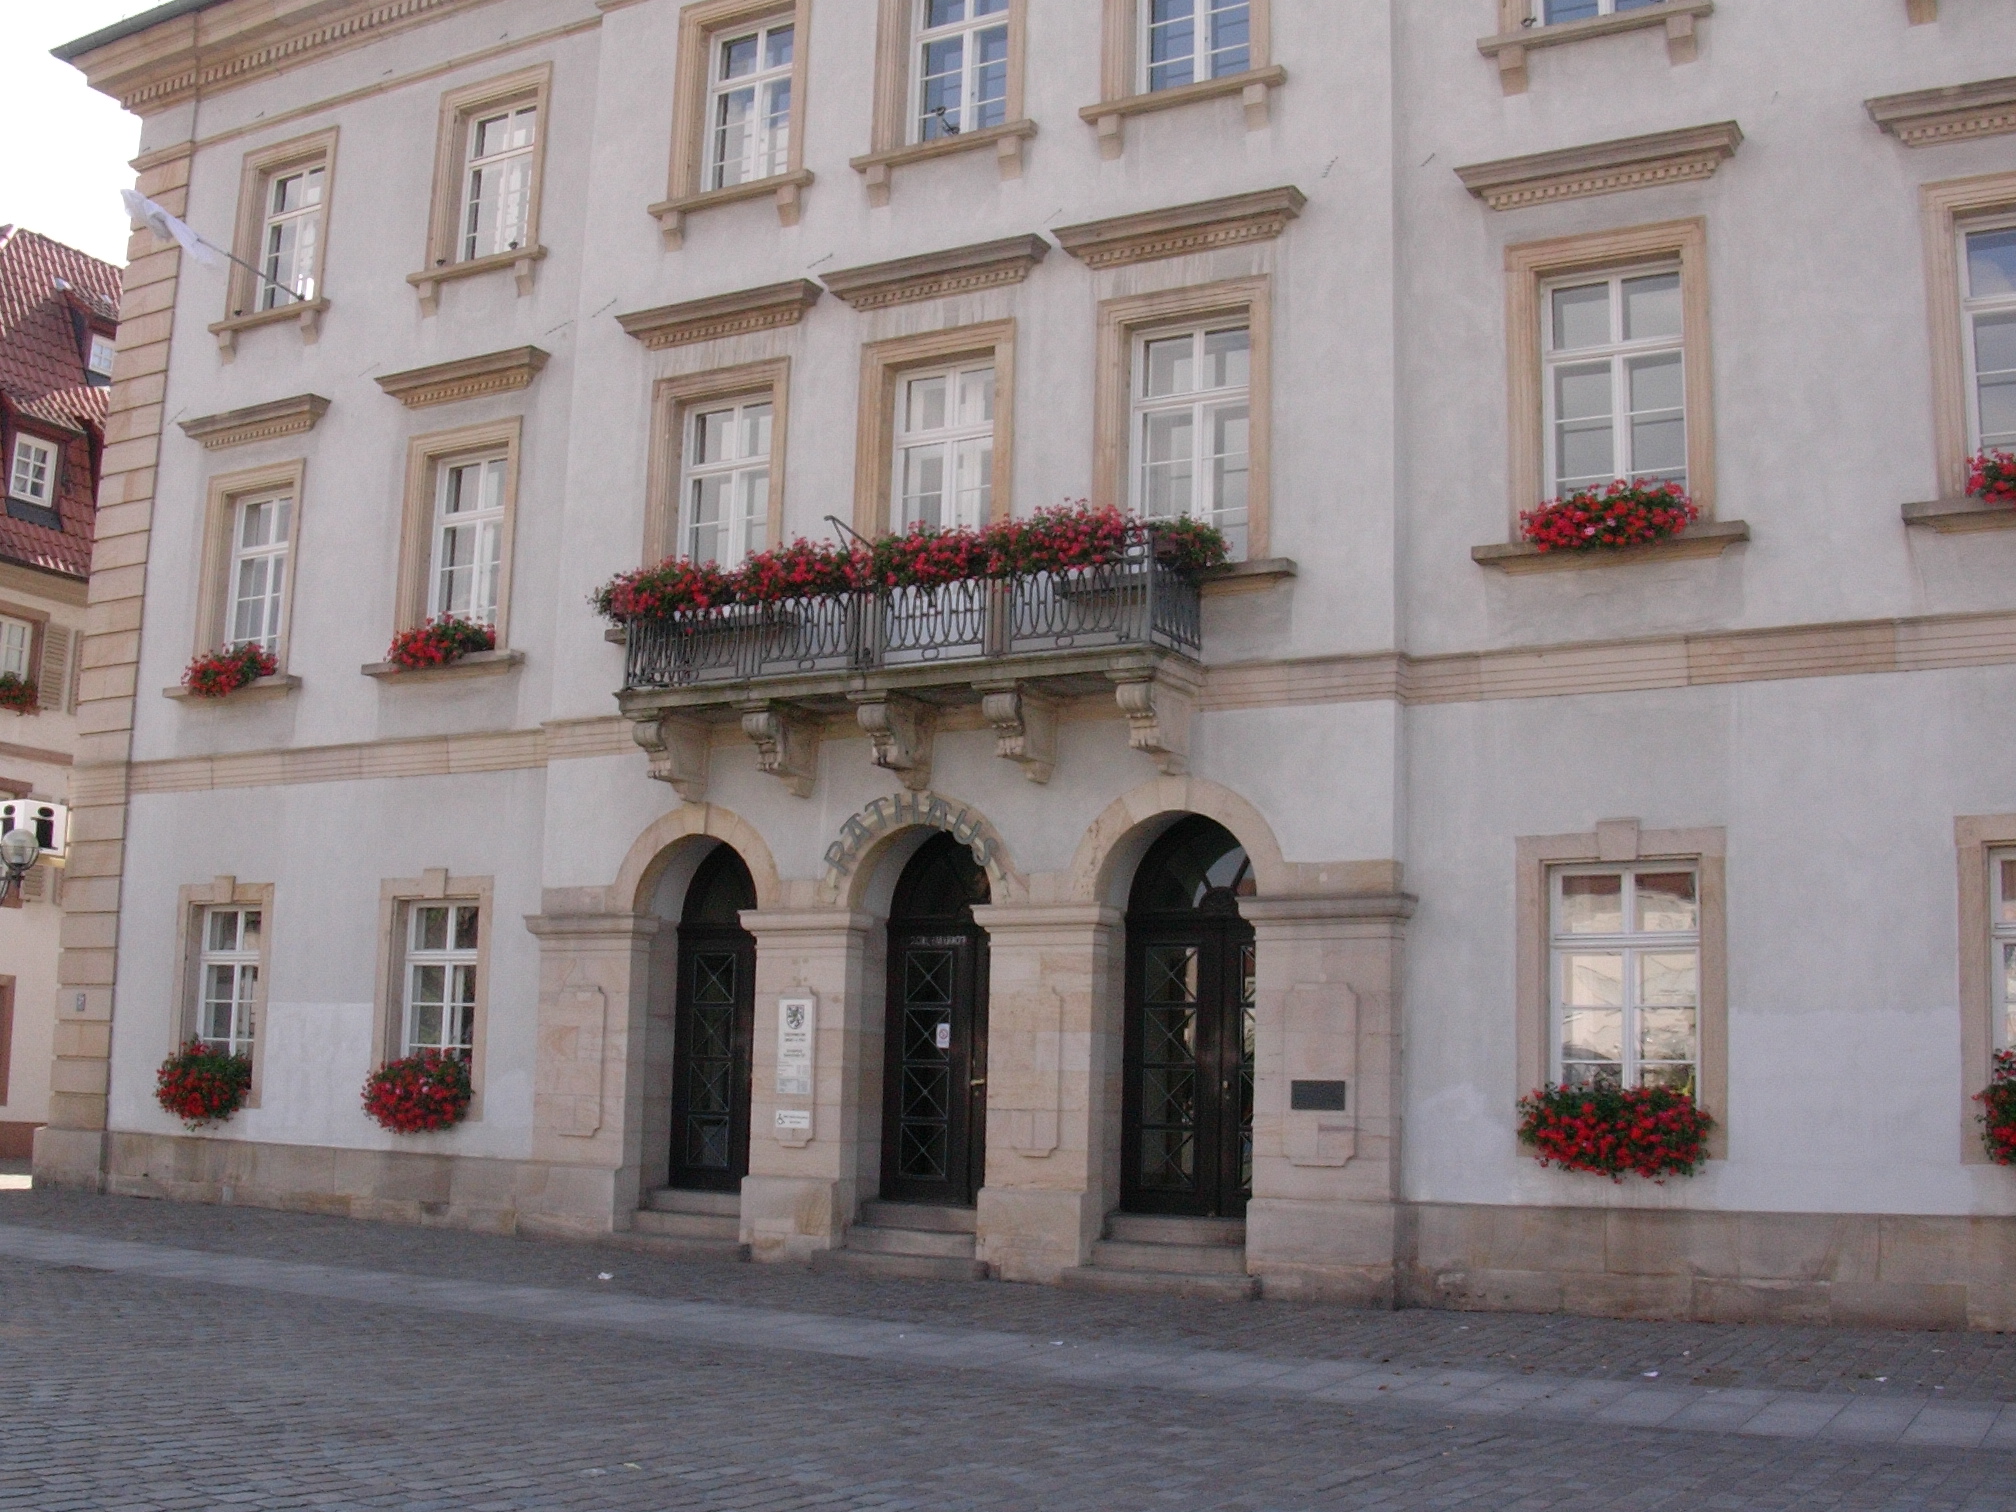 Das Rathaus der Stadt Landau